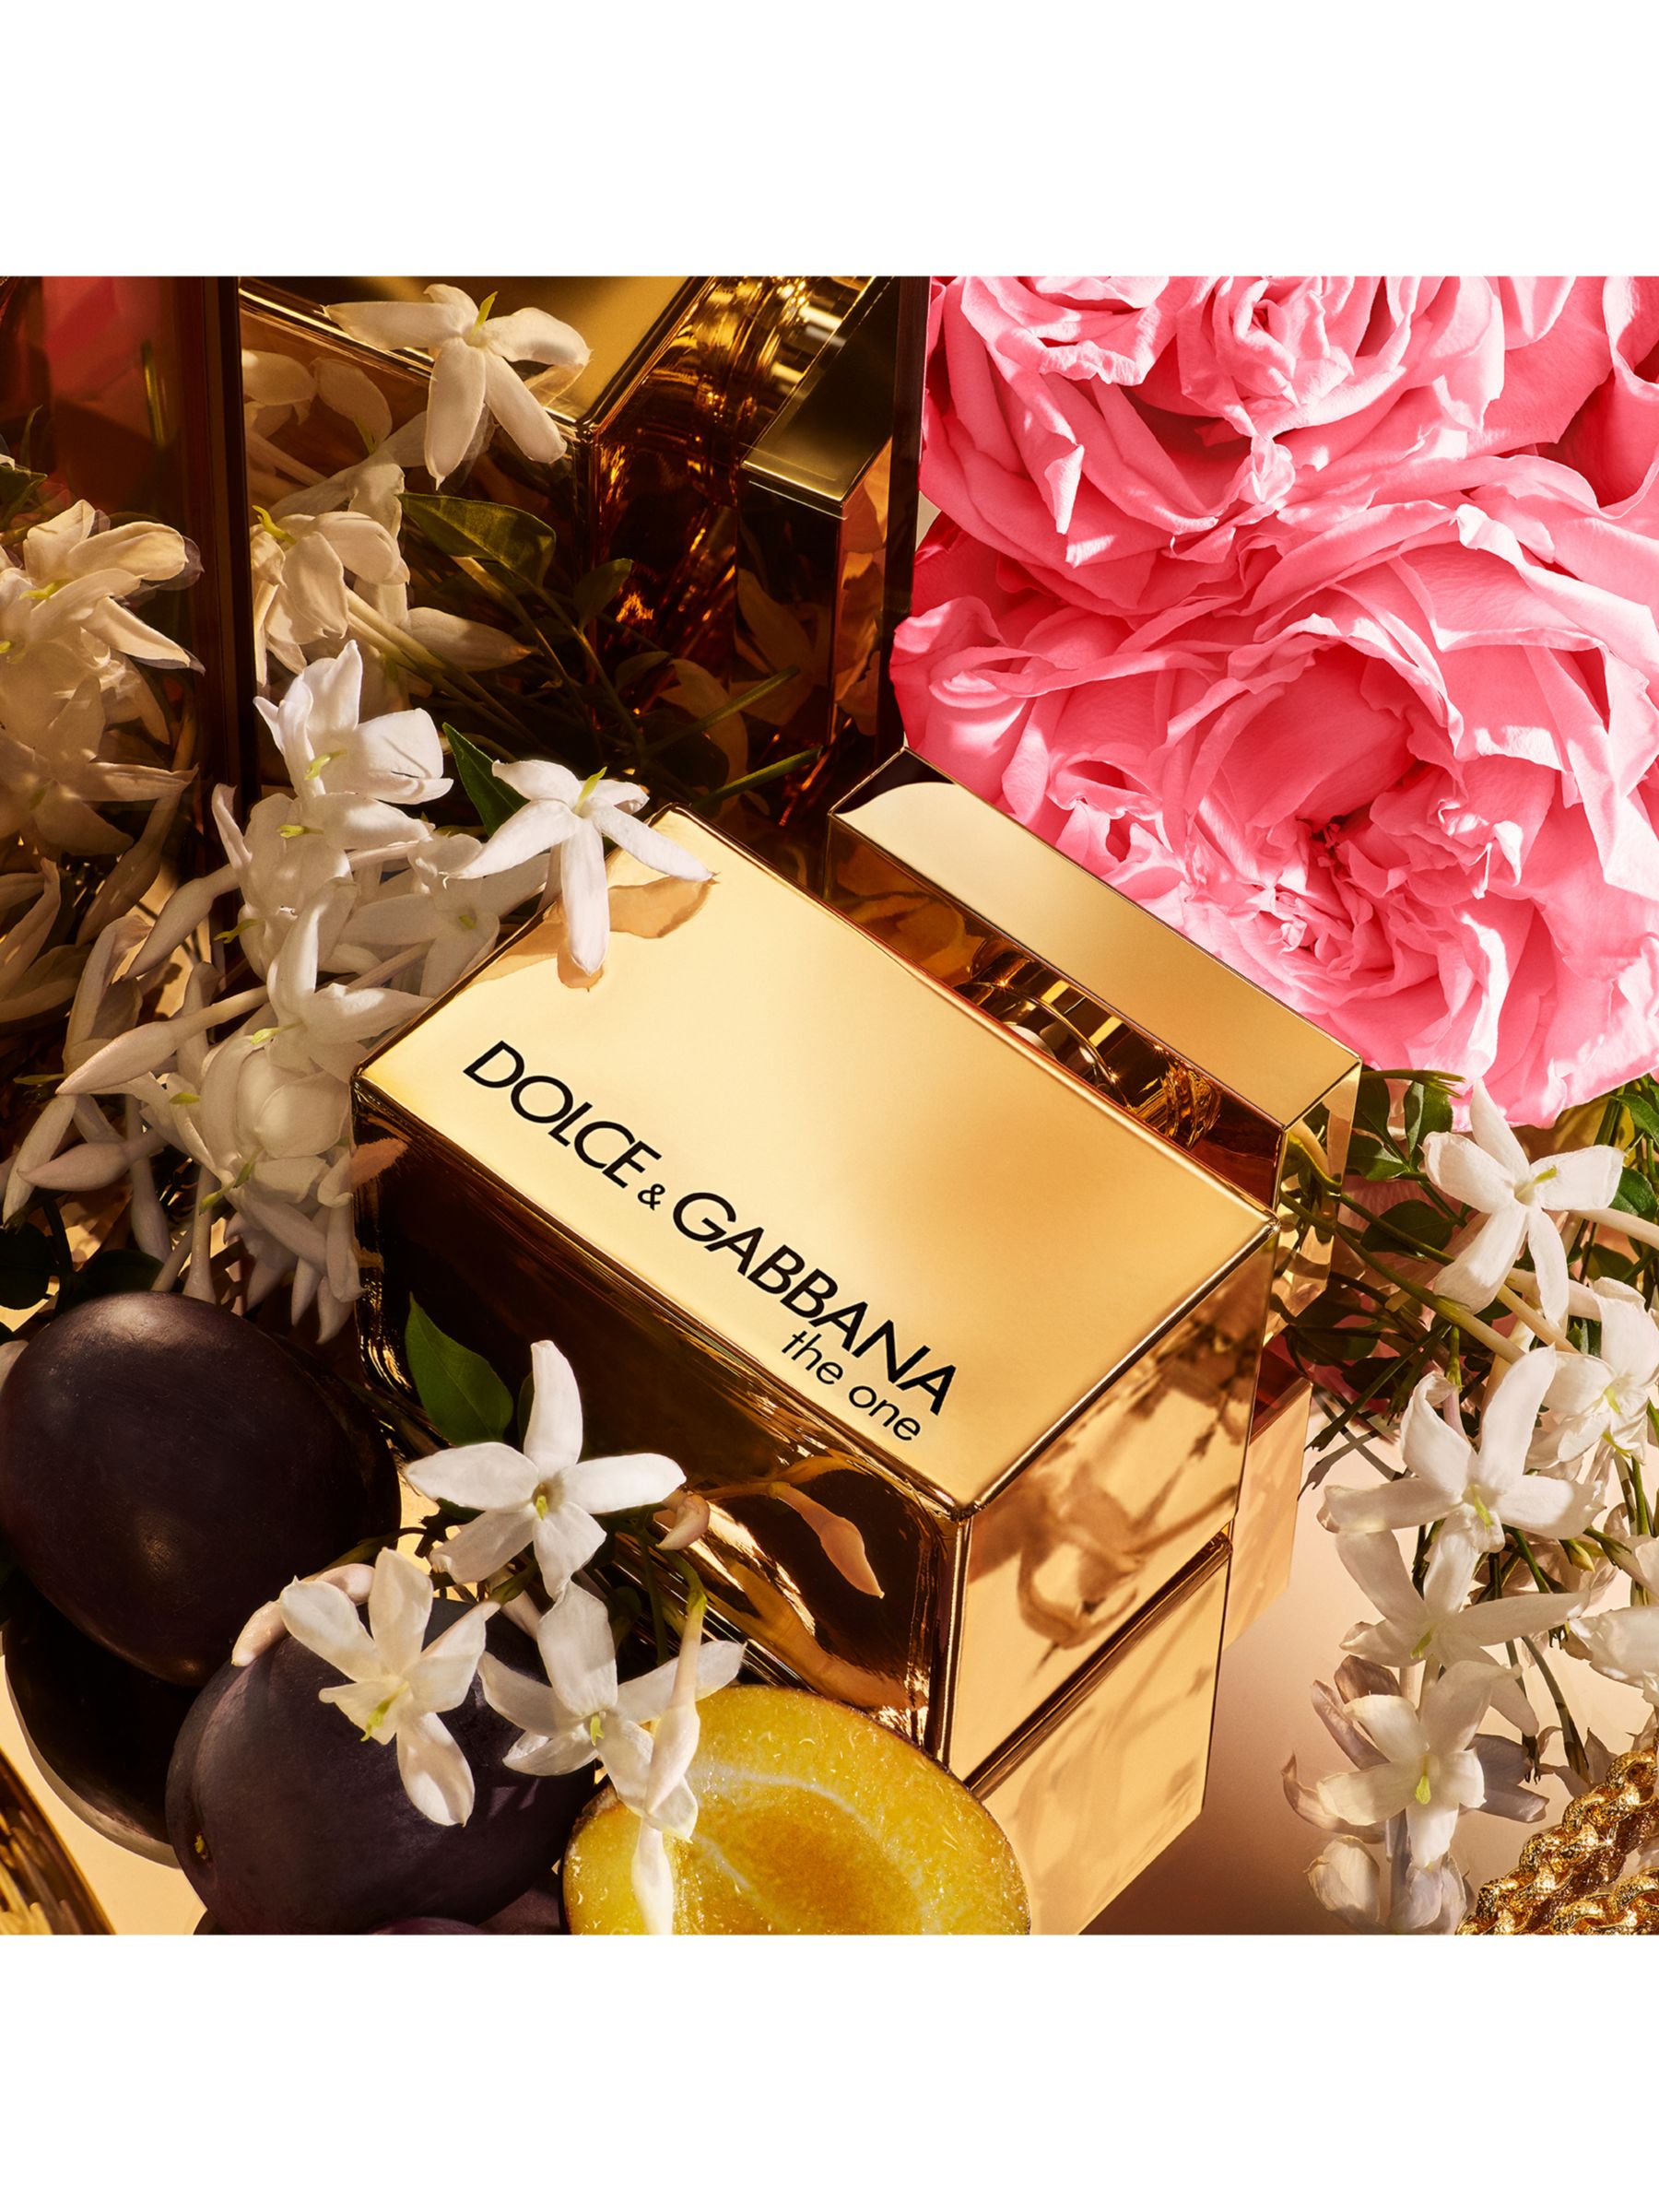 Dolce & Gabbana The One Gold Eau de Parfum Intense, 75ml 2